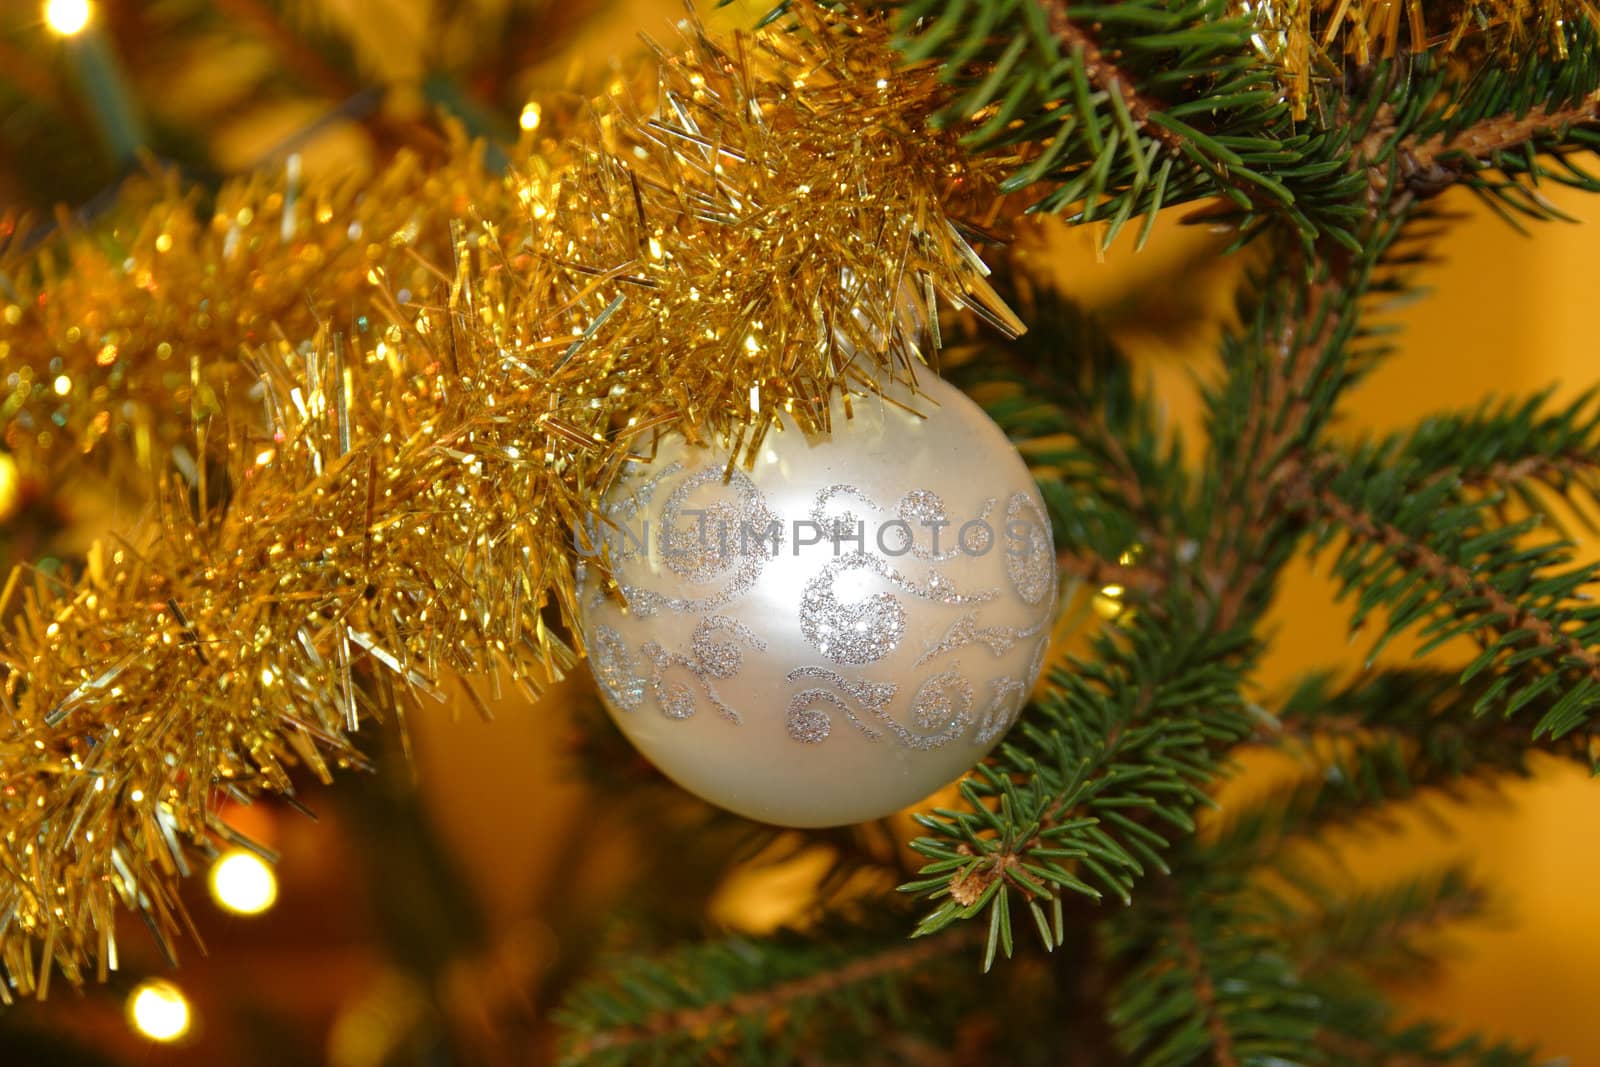 the ball pendant on holiday Christmas tree 